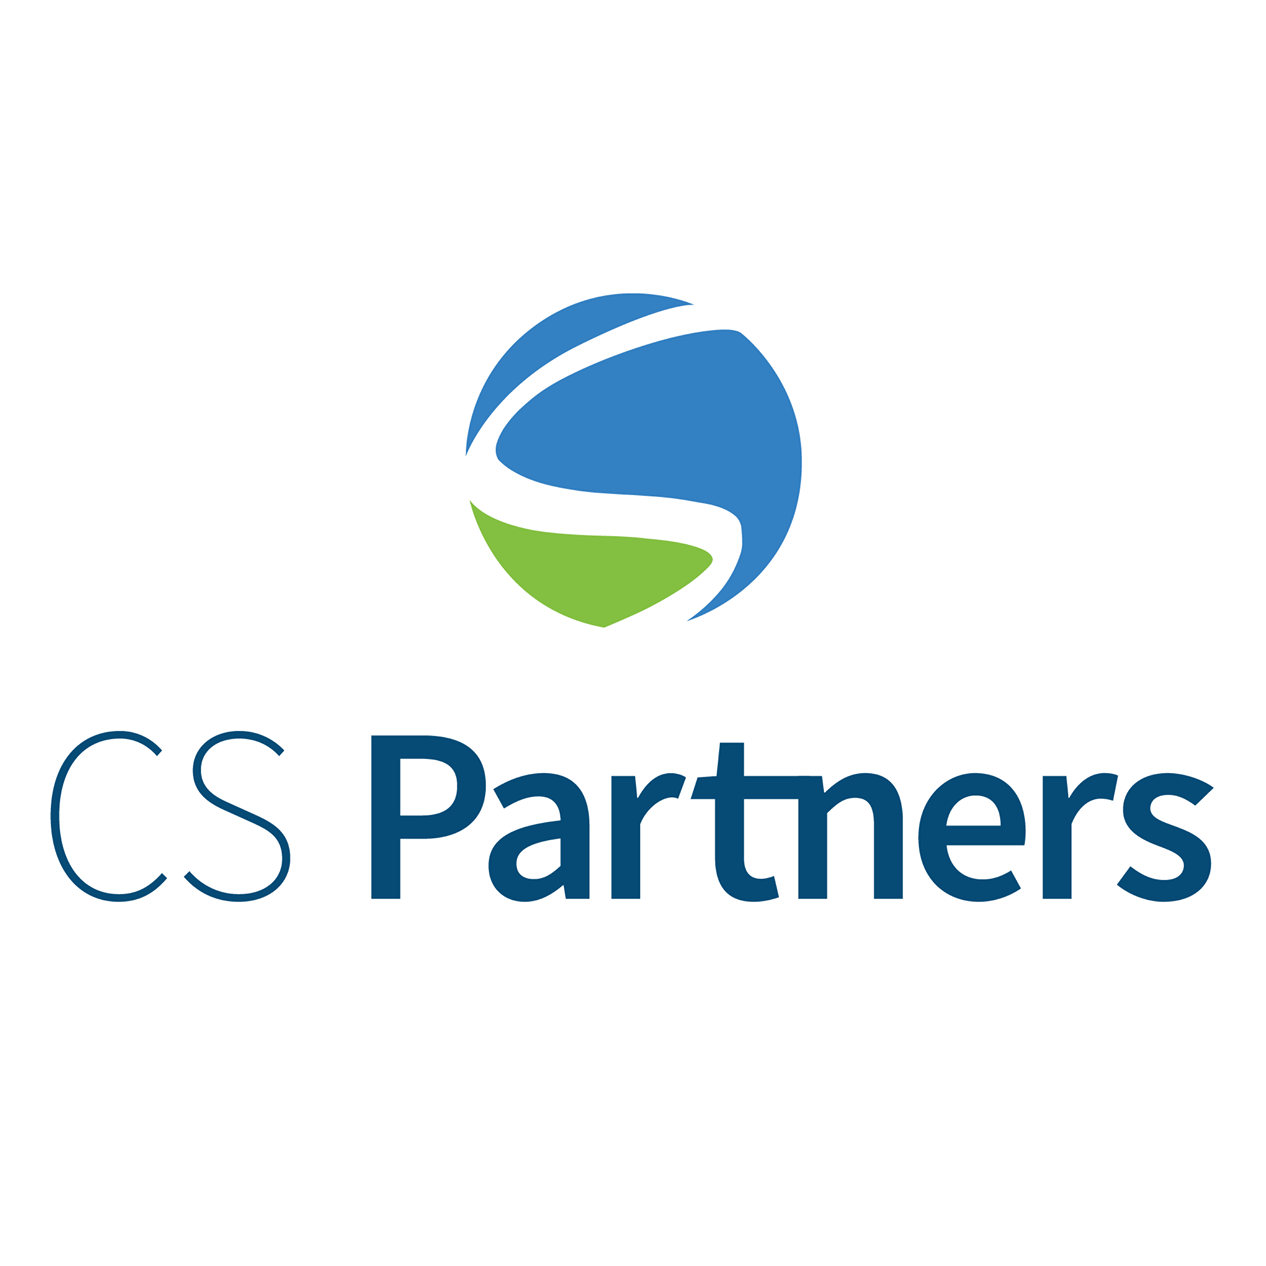 CS Partners